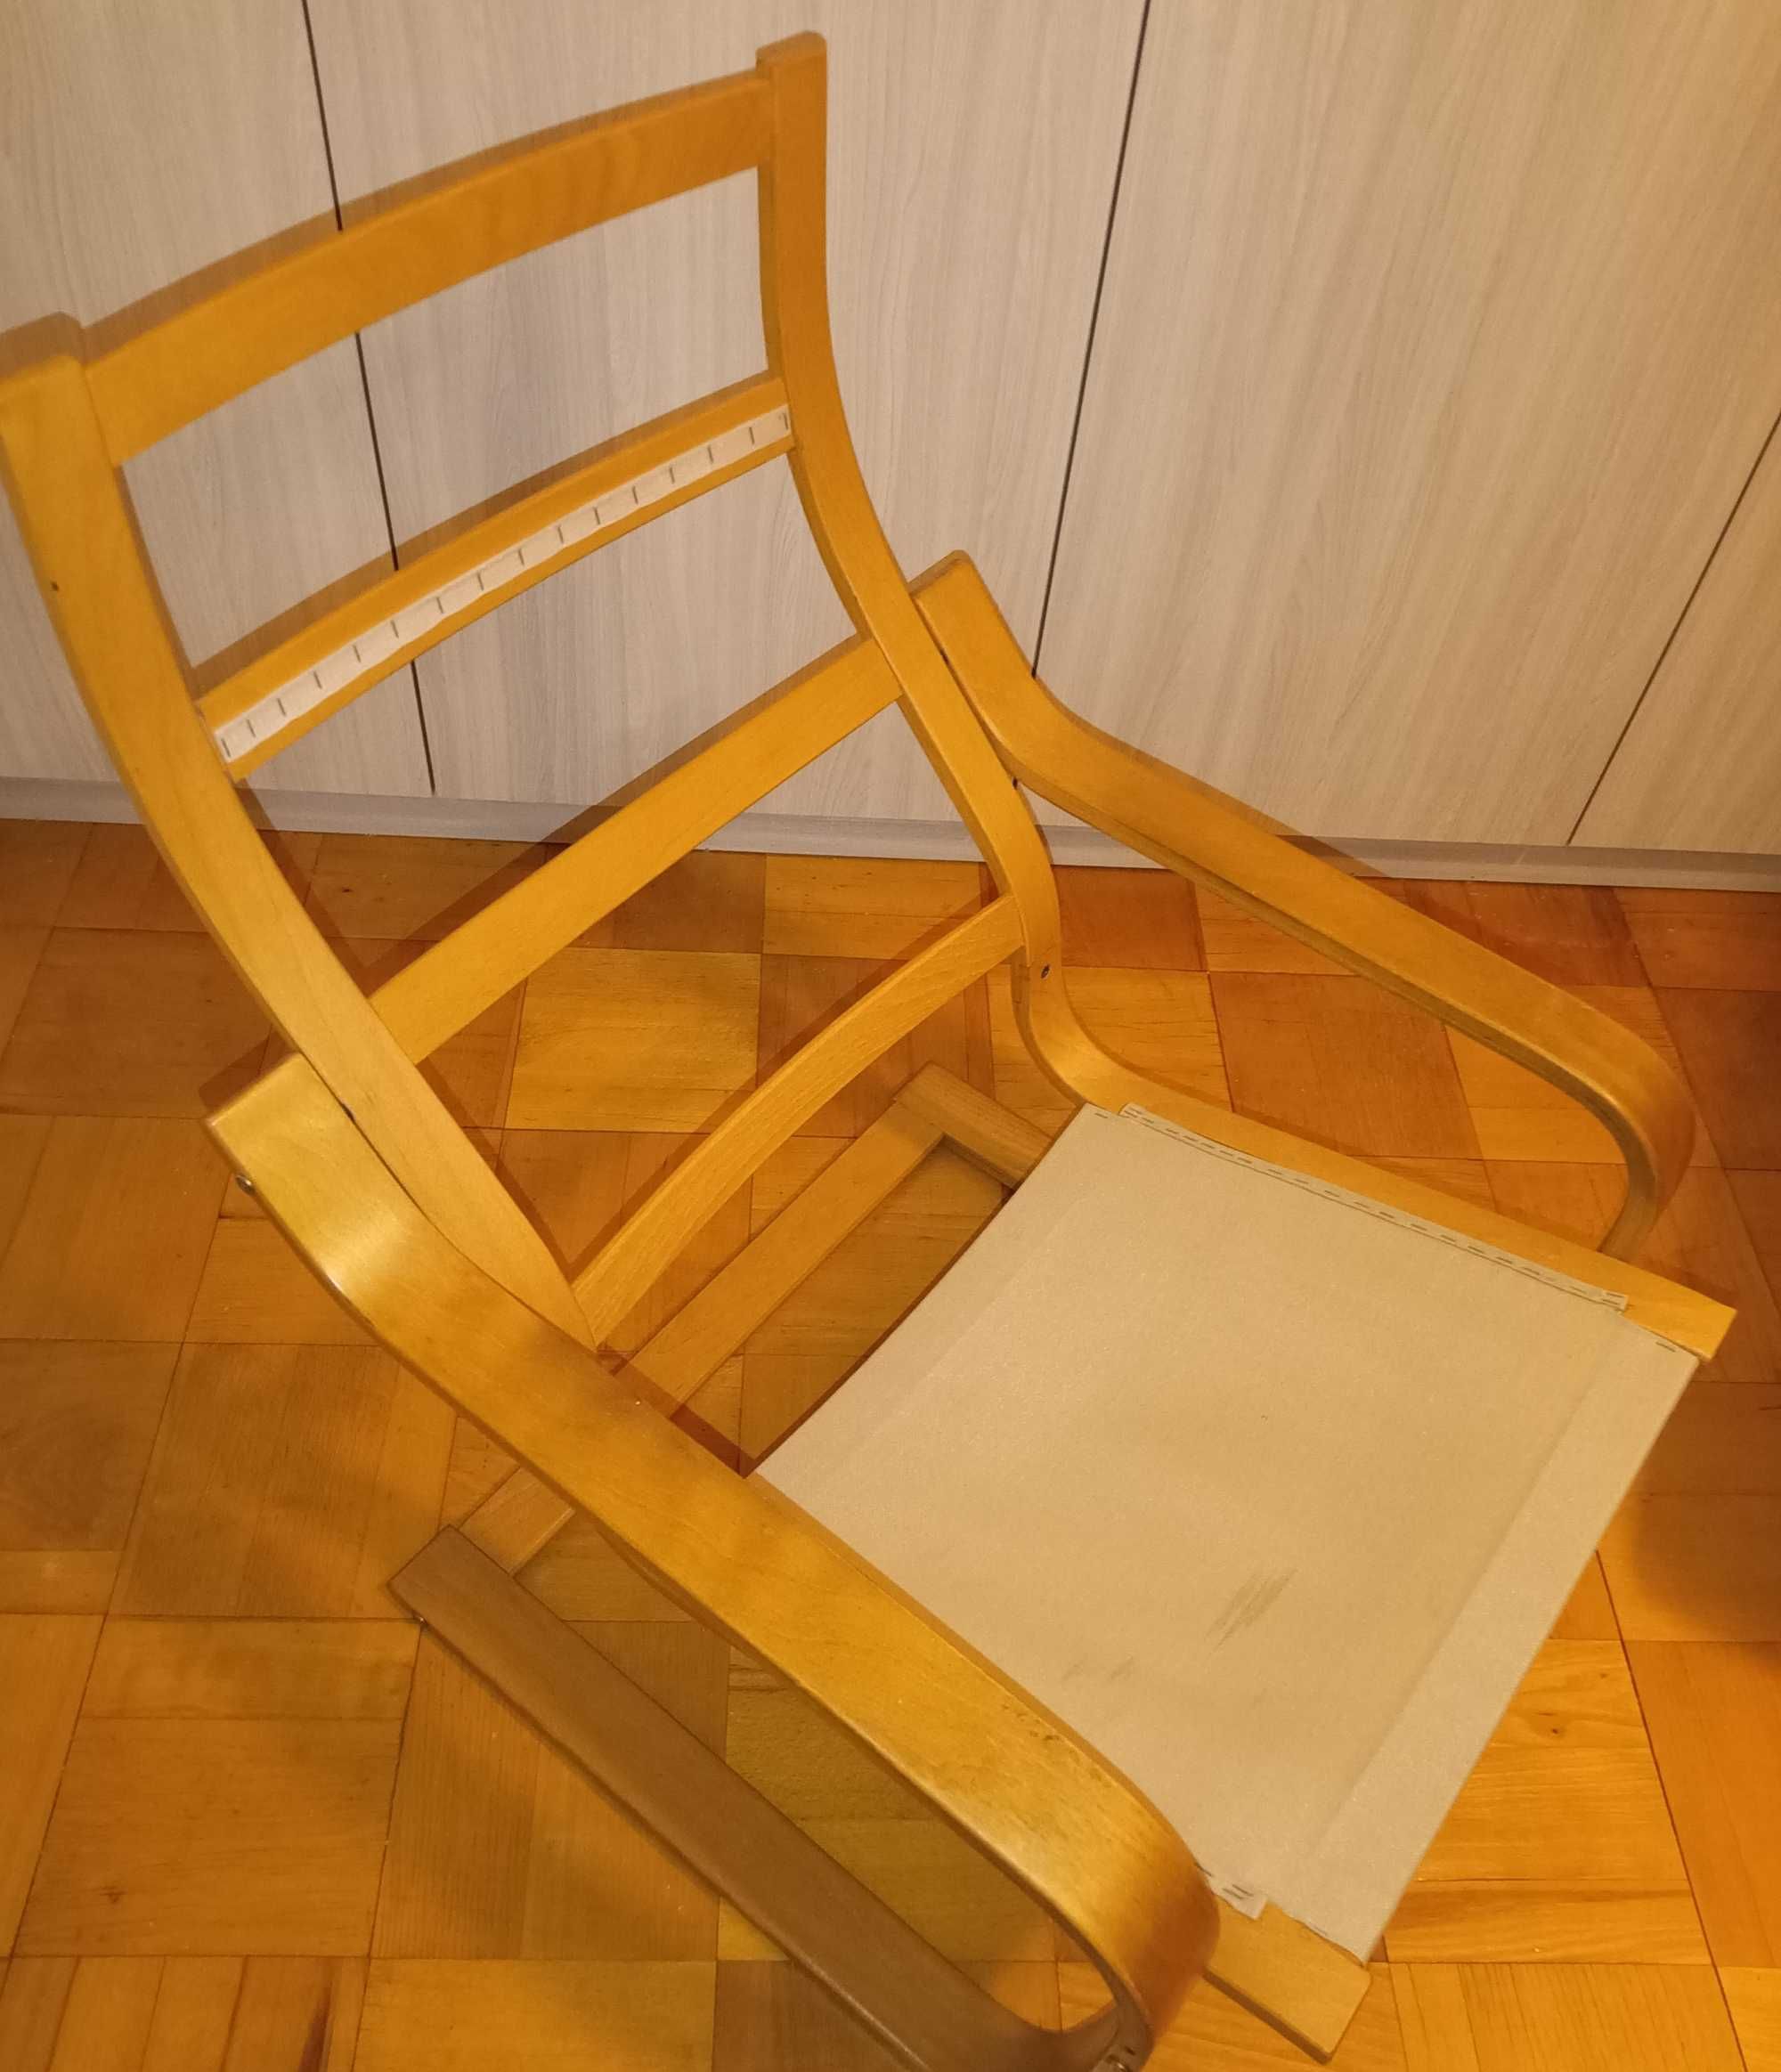 Fotel bujany drewniany + podnóżek